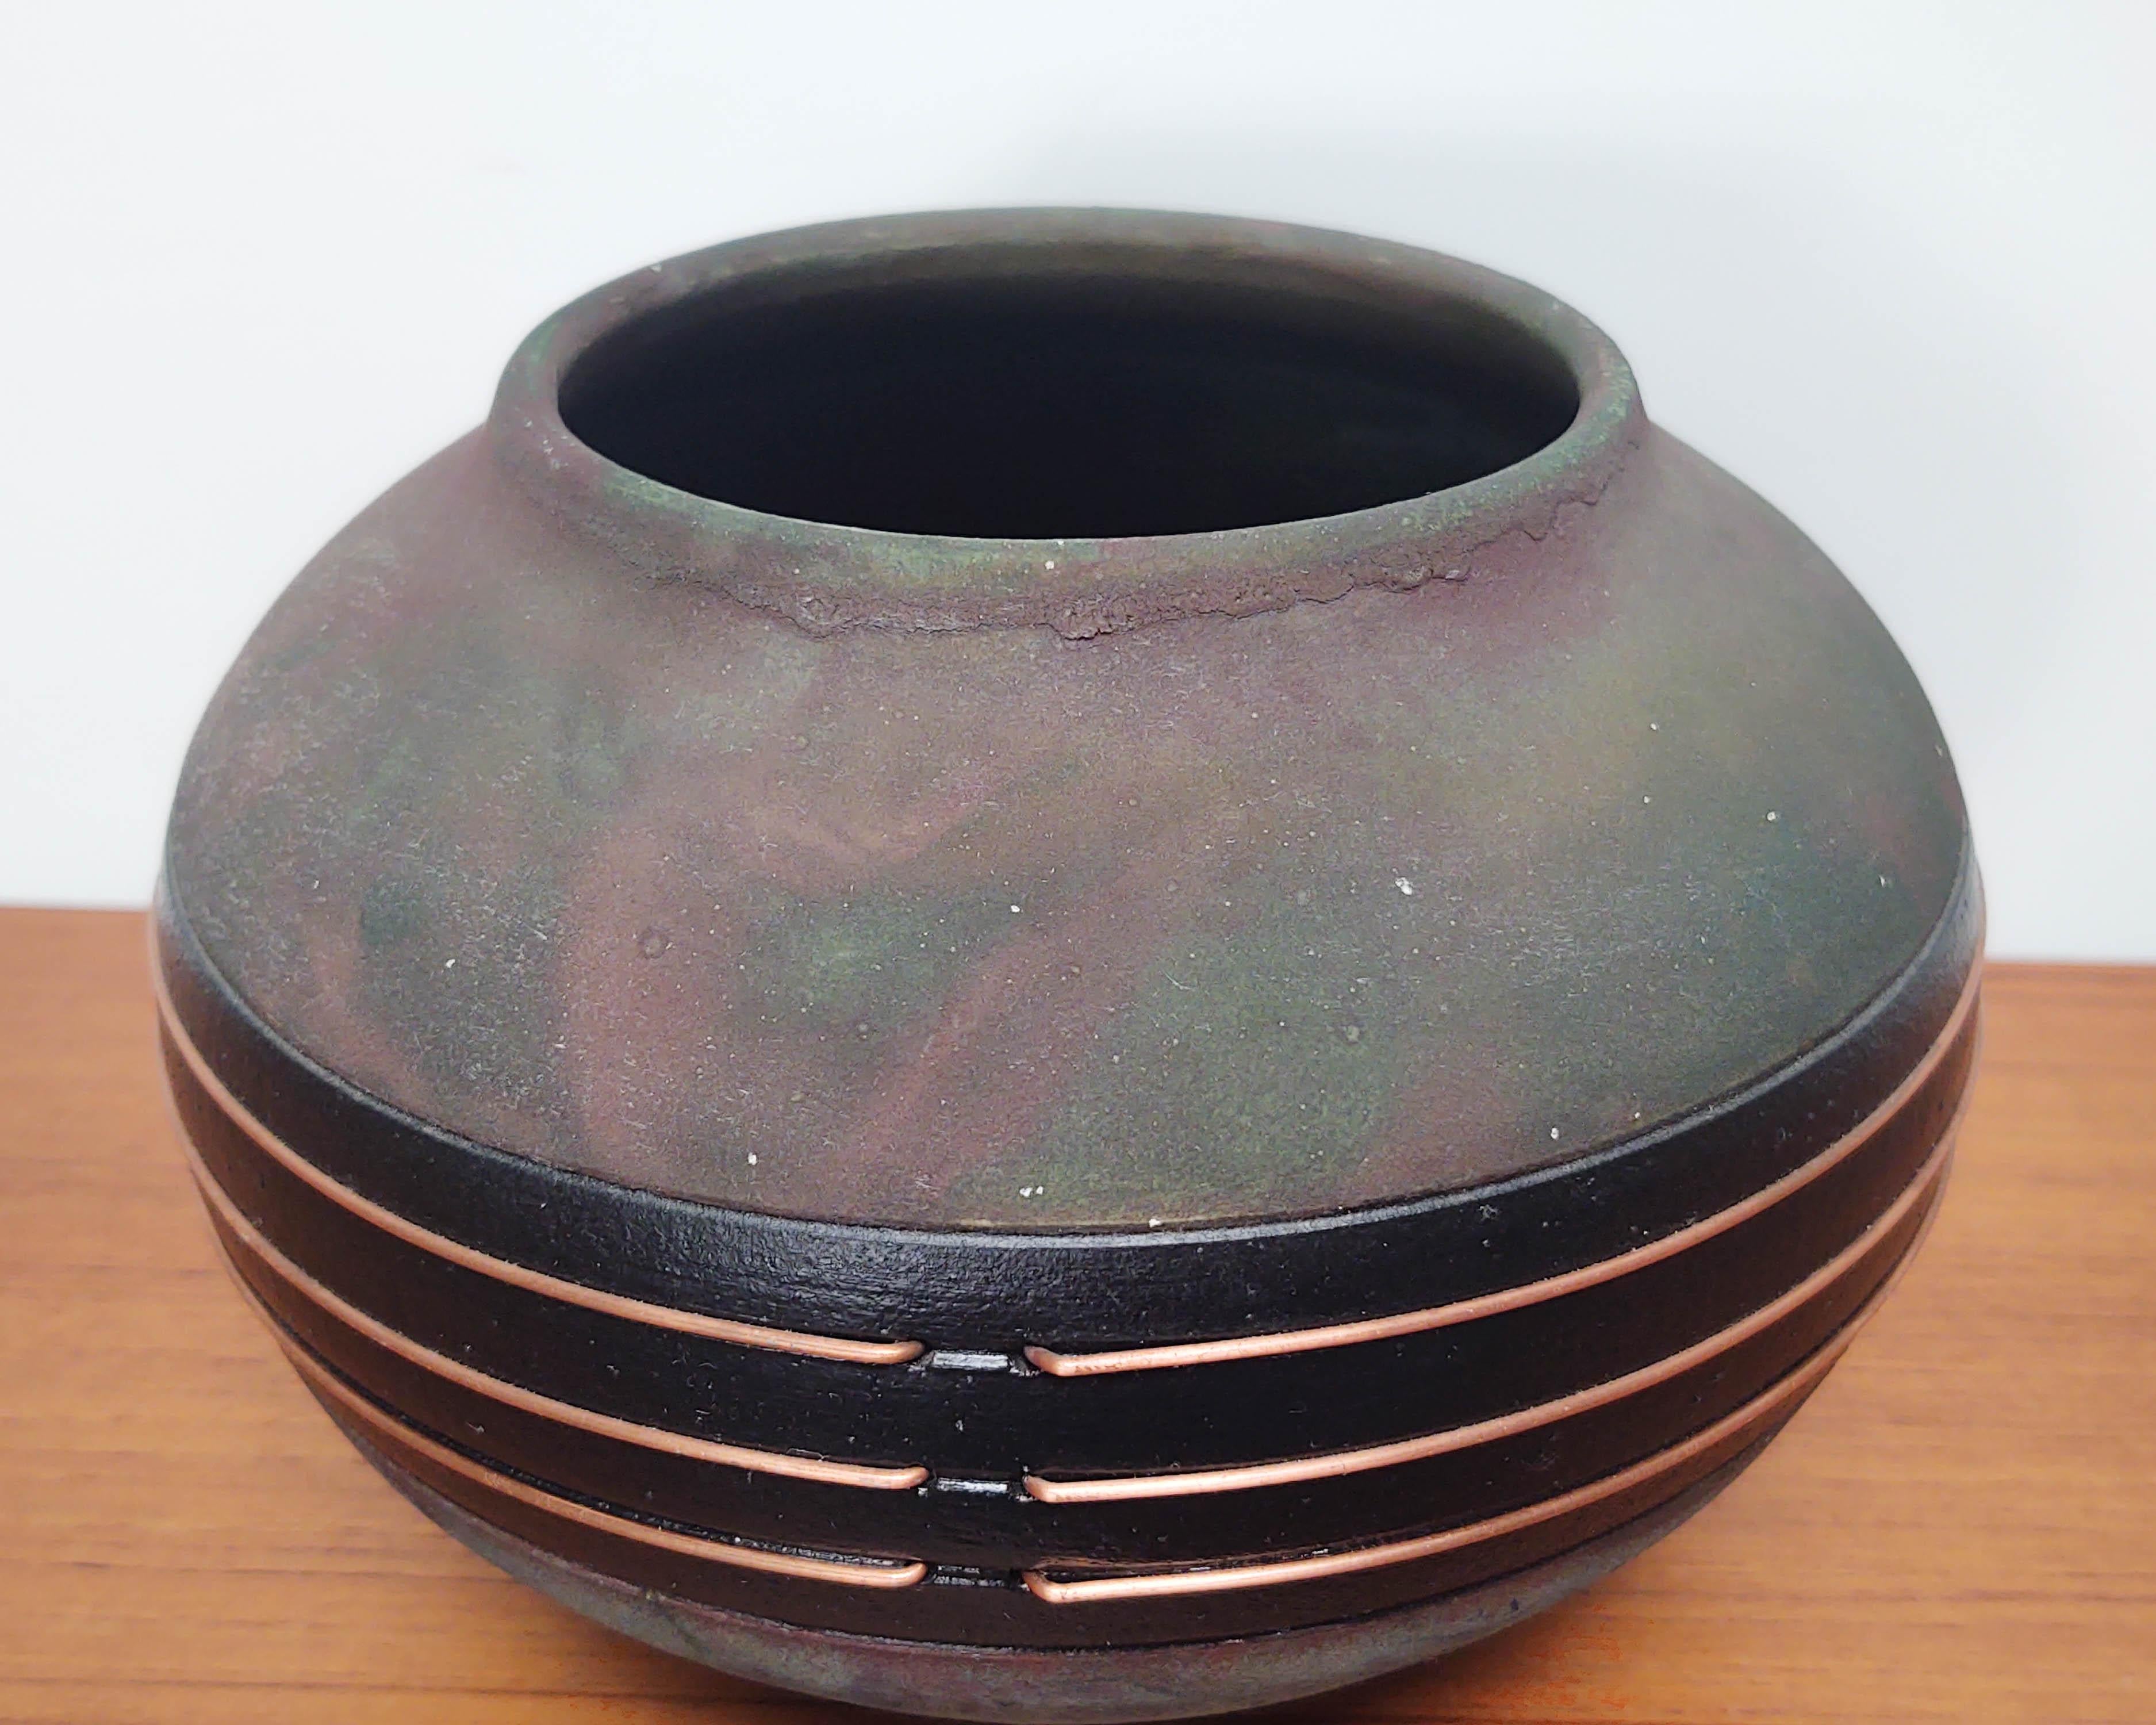 Vase / récipient oblong en céramique noire avec une couche d'oxyde arc-en-ciel tourbillonnante typique de la cuisson raku. Les décorations en fil de cuivre font partie intégrante du navire. Non étanche, typique de la faïence. Signé en bas.
 
6